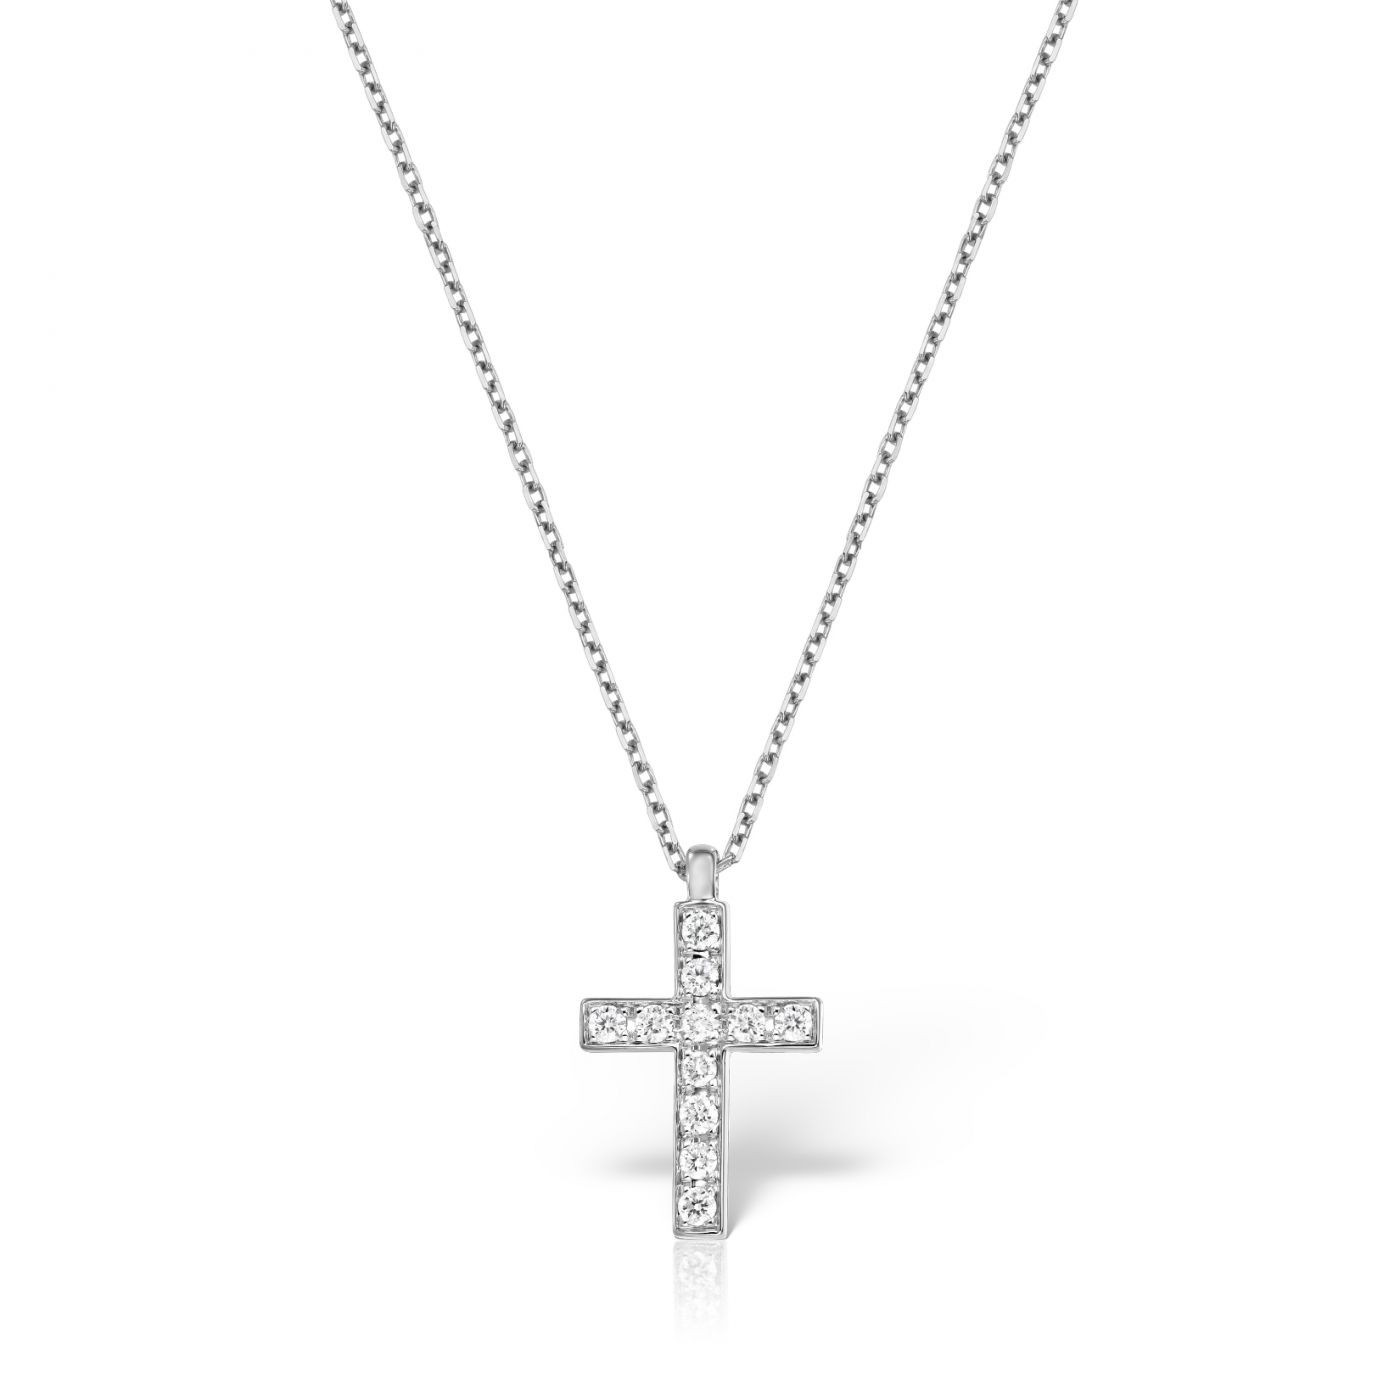 Lant cu pandantiv cruce Maria Granacci din aur alb 18k cu diamante